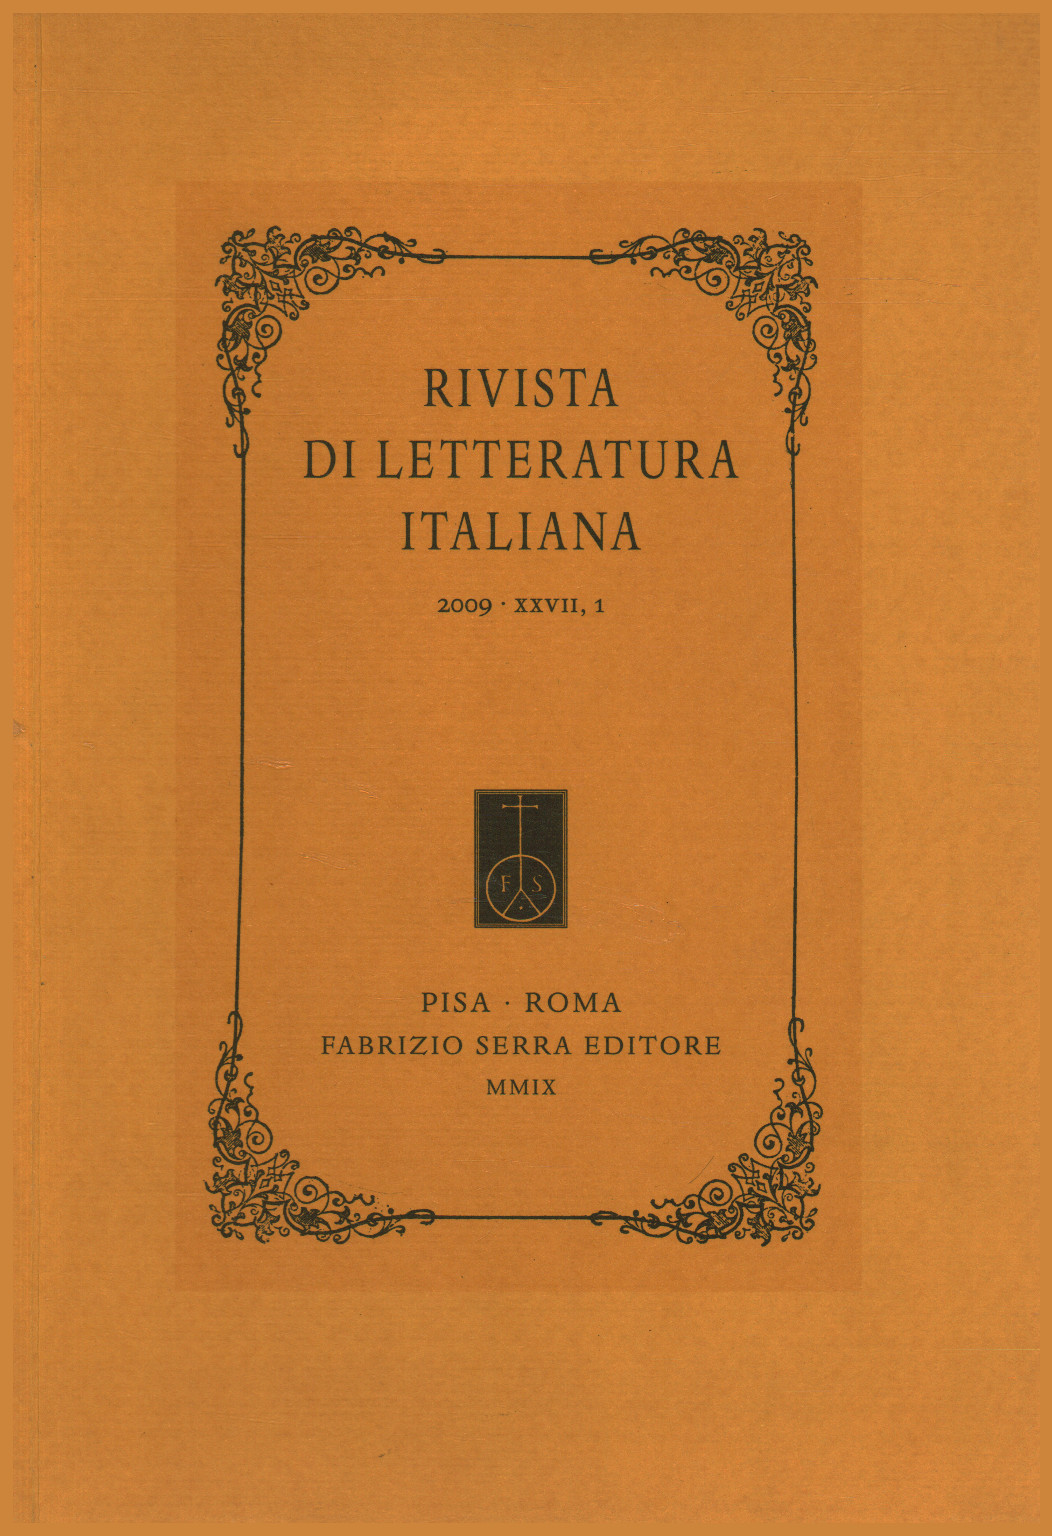 Rivista di letteratura italiana 2009,XXVII,1, s.a.